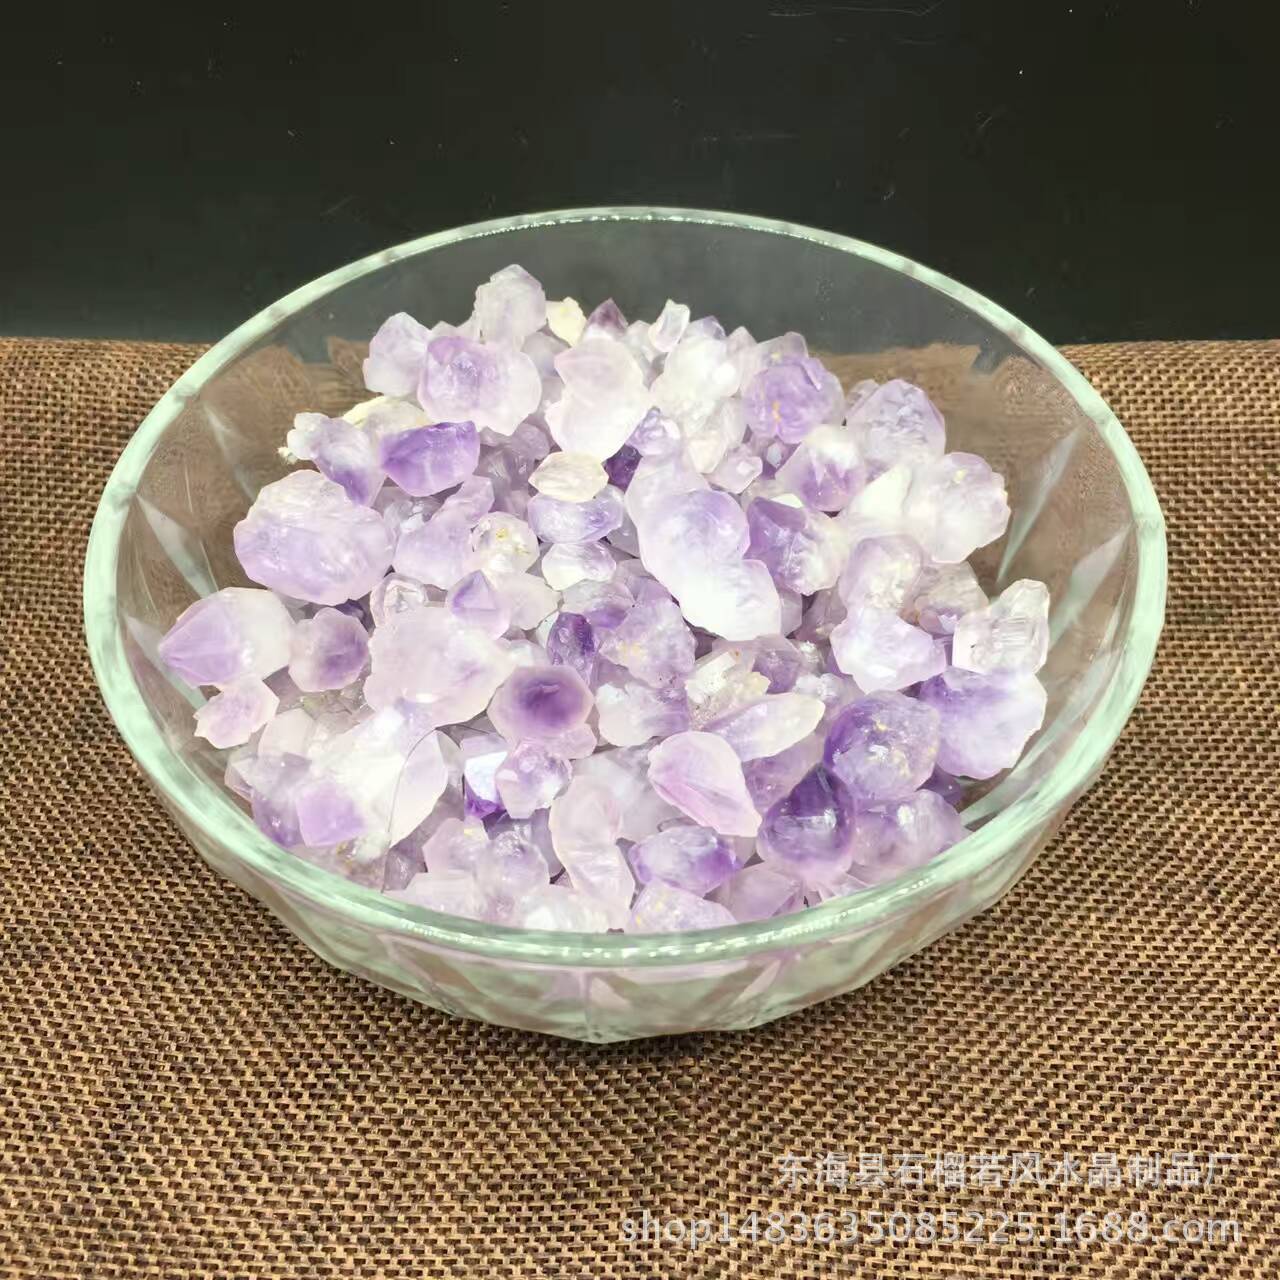 天然紫水晶 小晶牙 装潢装饰材料 鱼缸 花盆每件1公斤